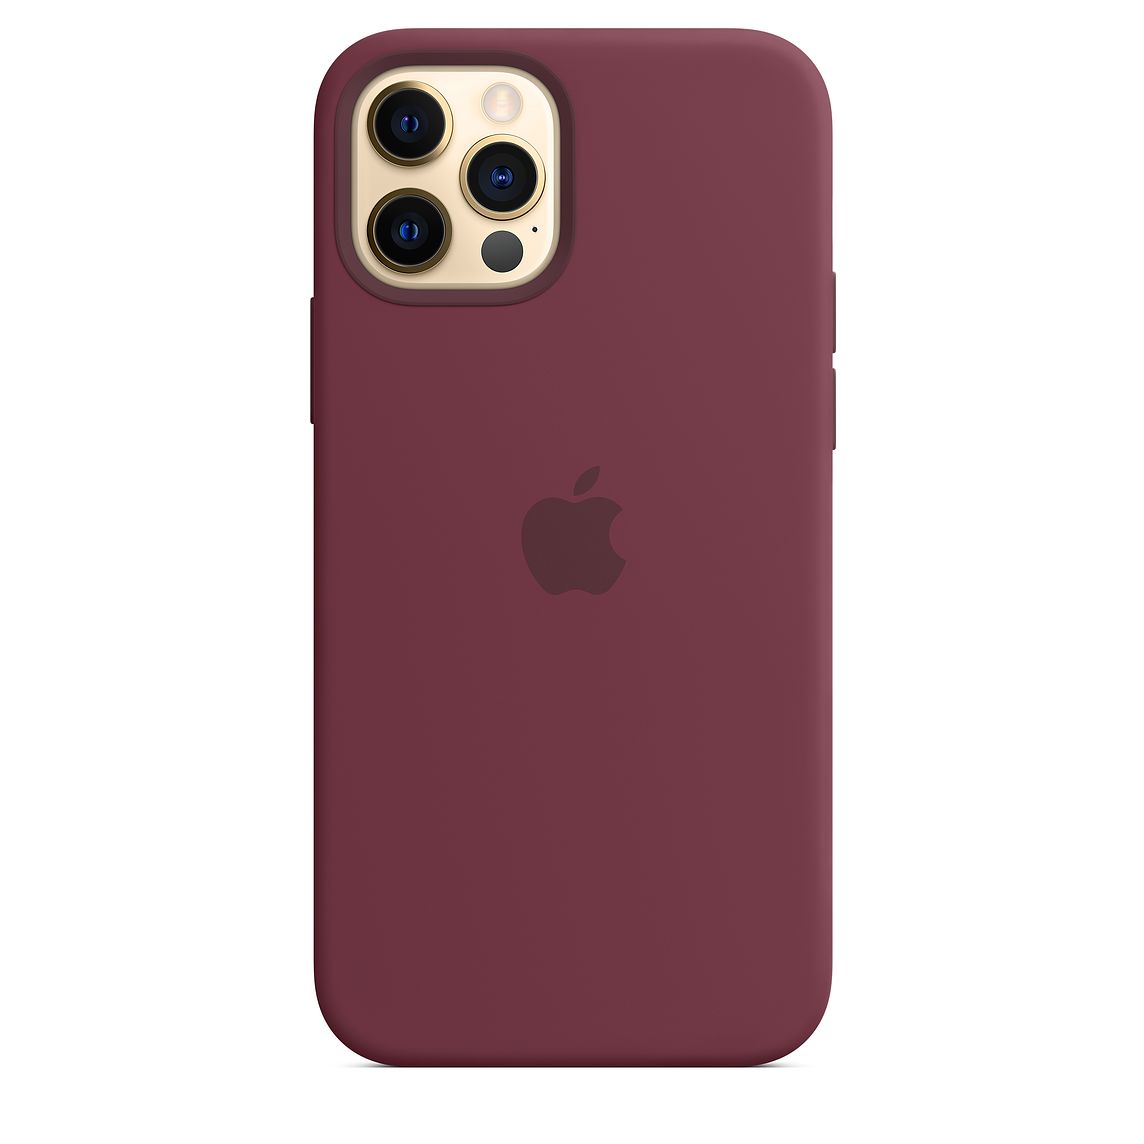 Фото — Чехол для смартфона Apple MagSafe для iPhone 12/12 Pro, cиликон, сливовый